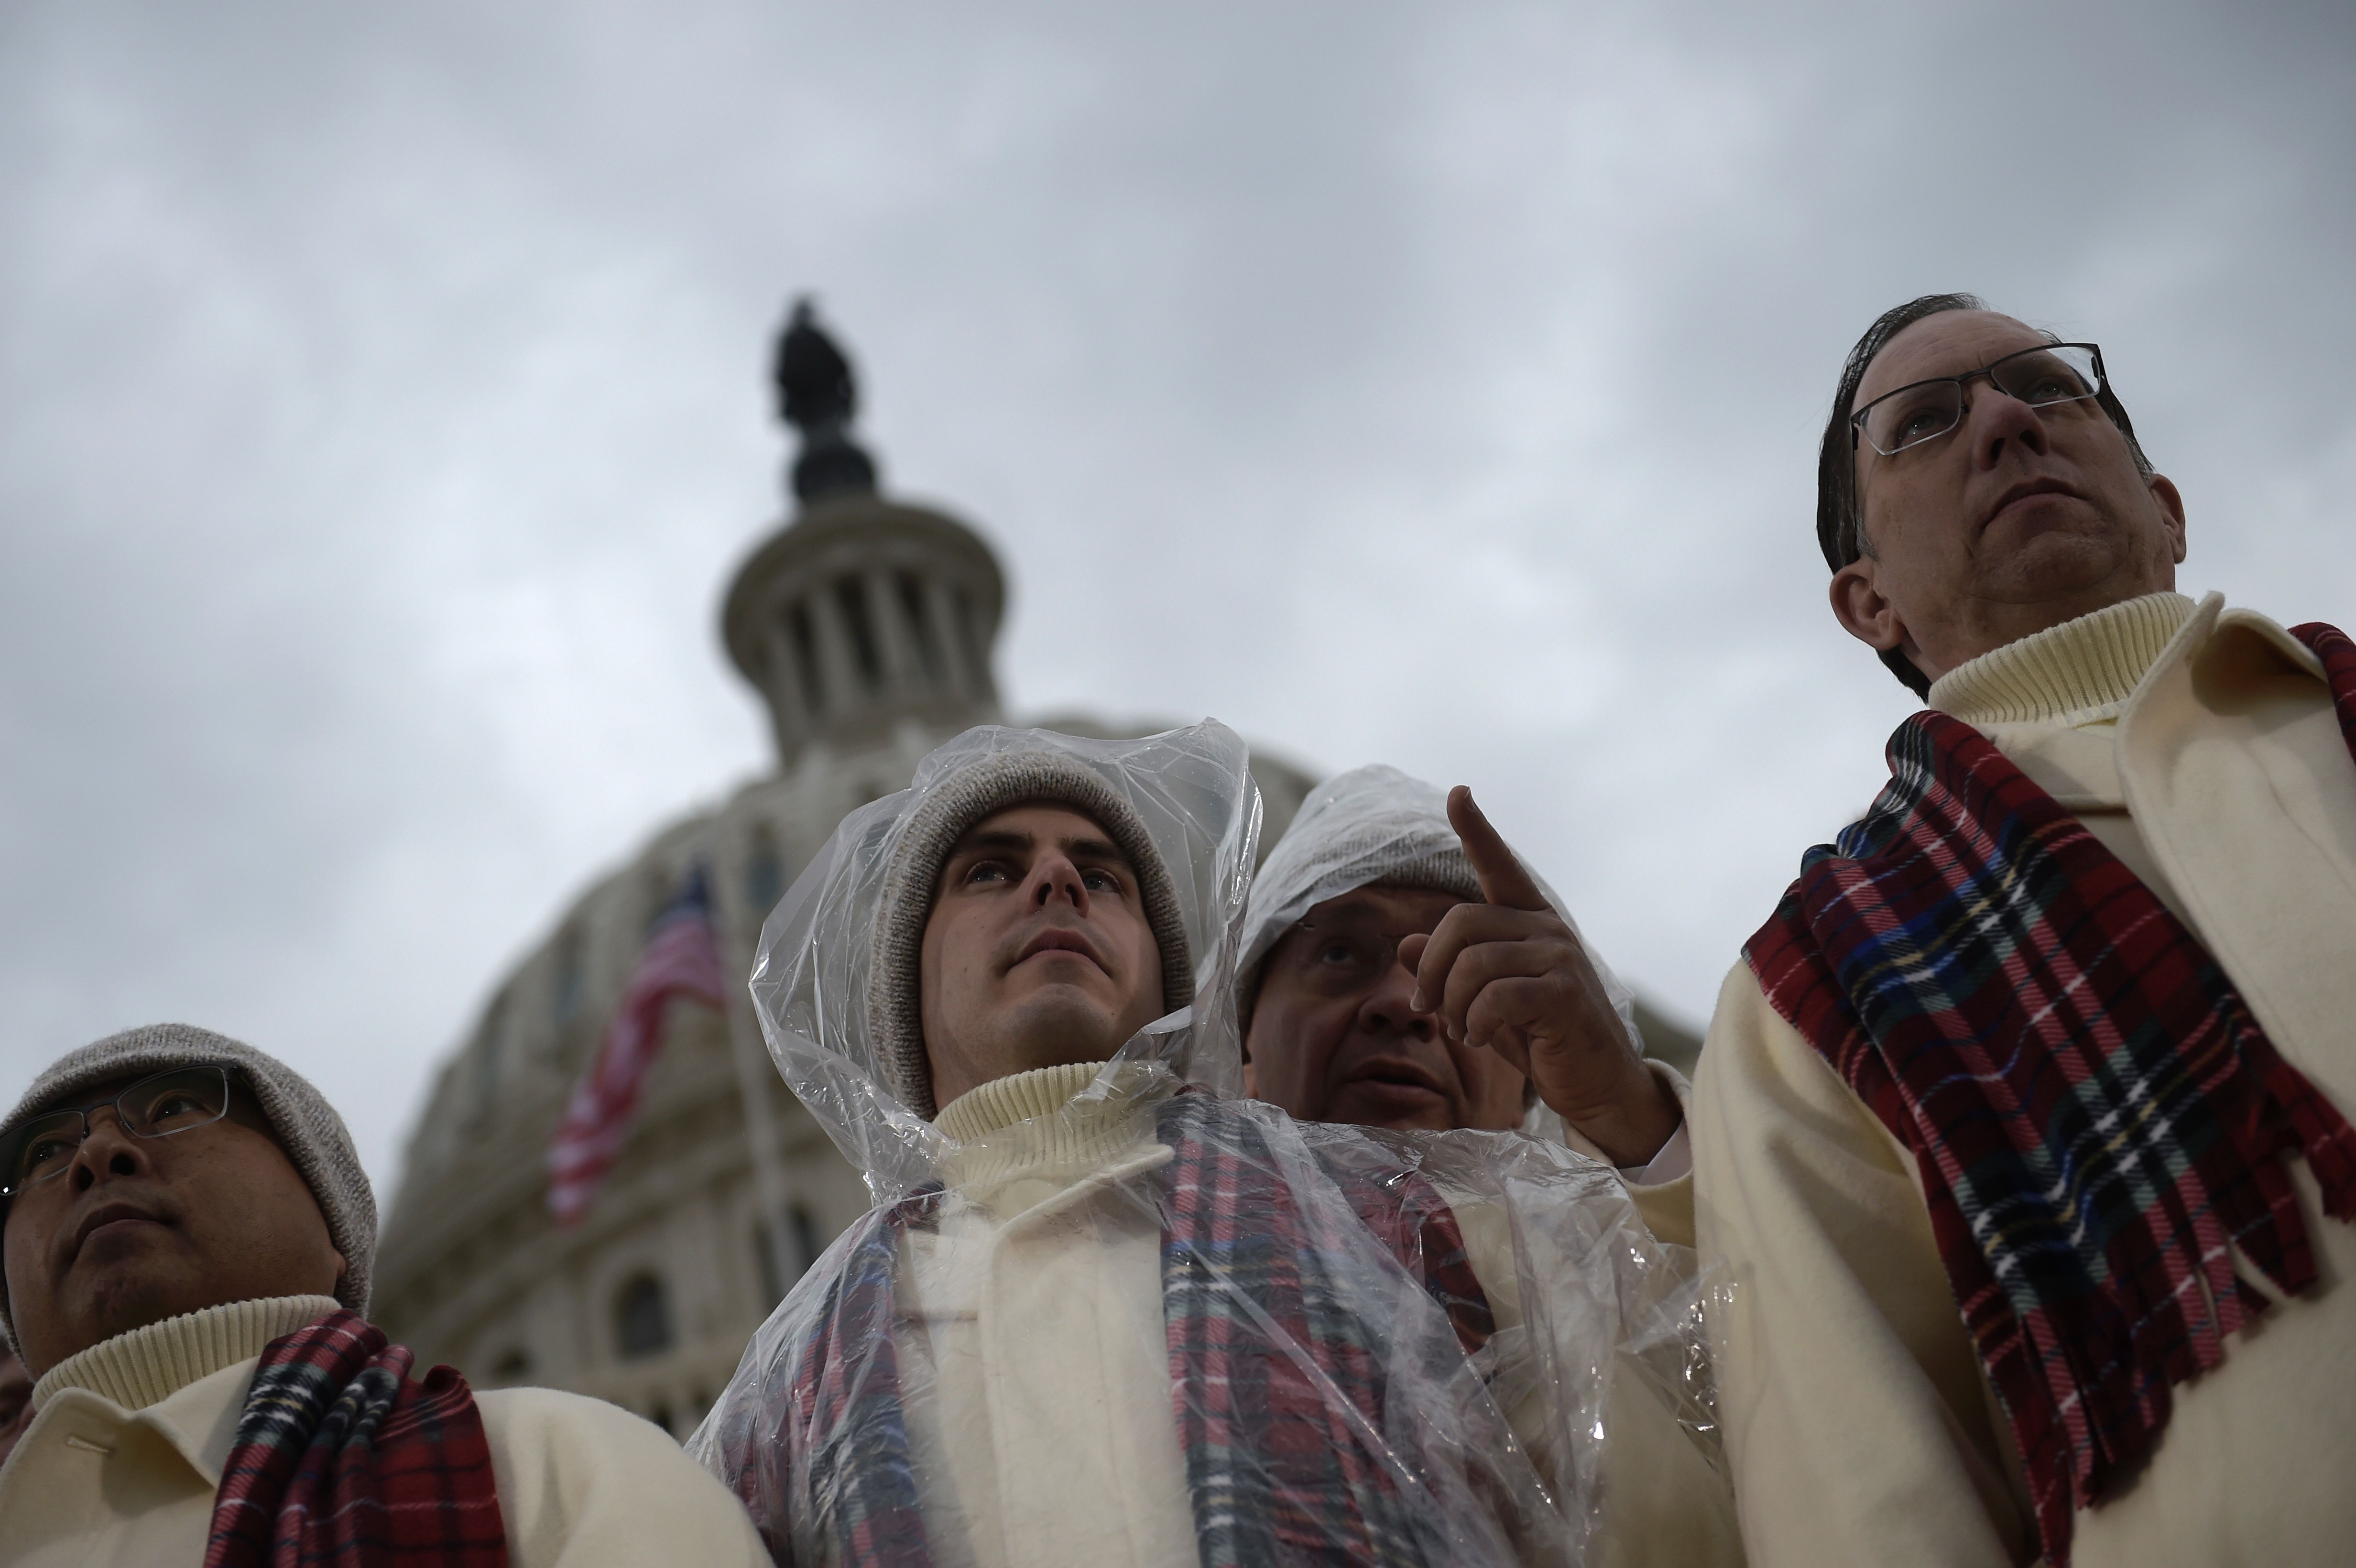 رجال الجوقة المرمونية يرتدون ملابس بلاستيكية لحمايتهم من الأمطار فى واشنطن